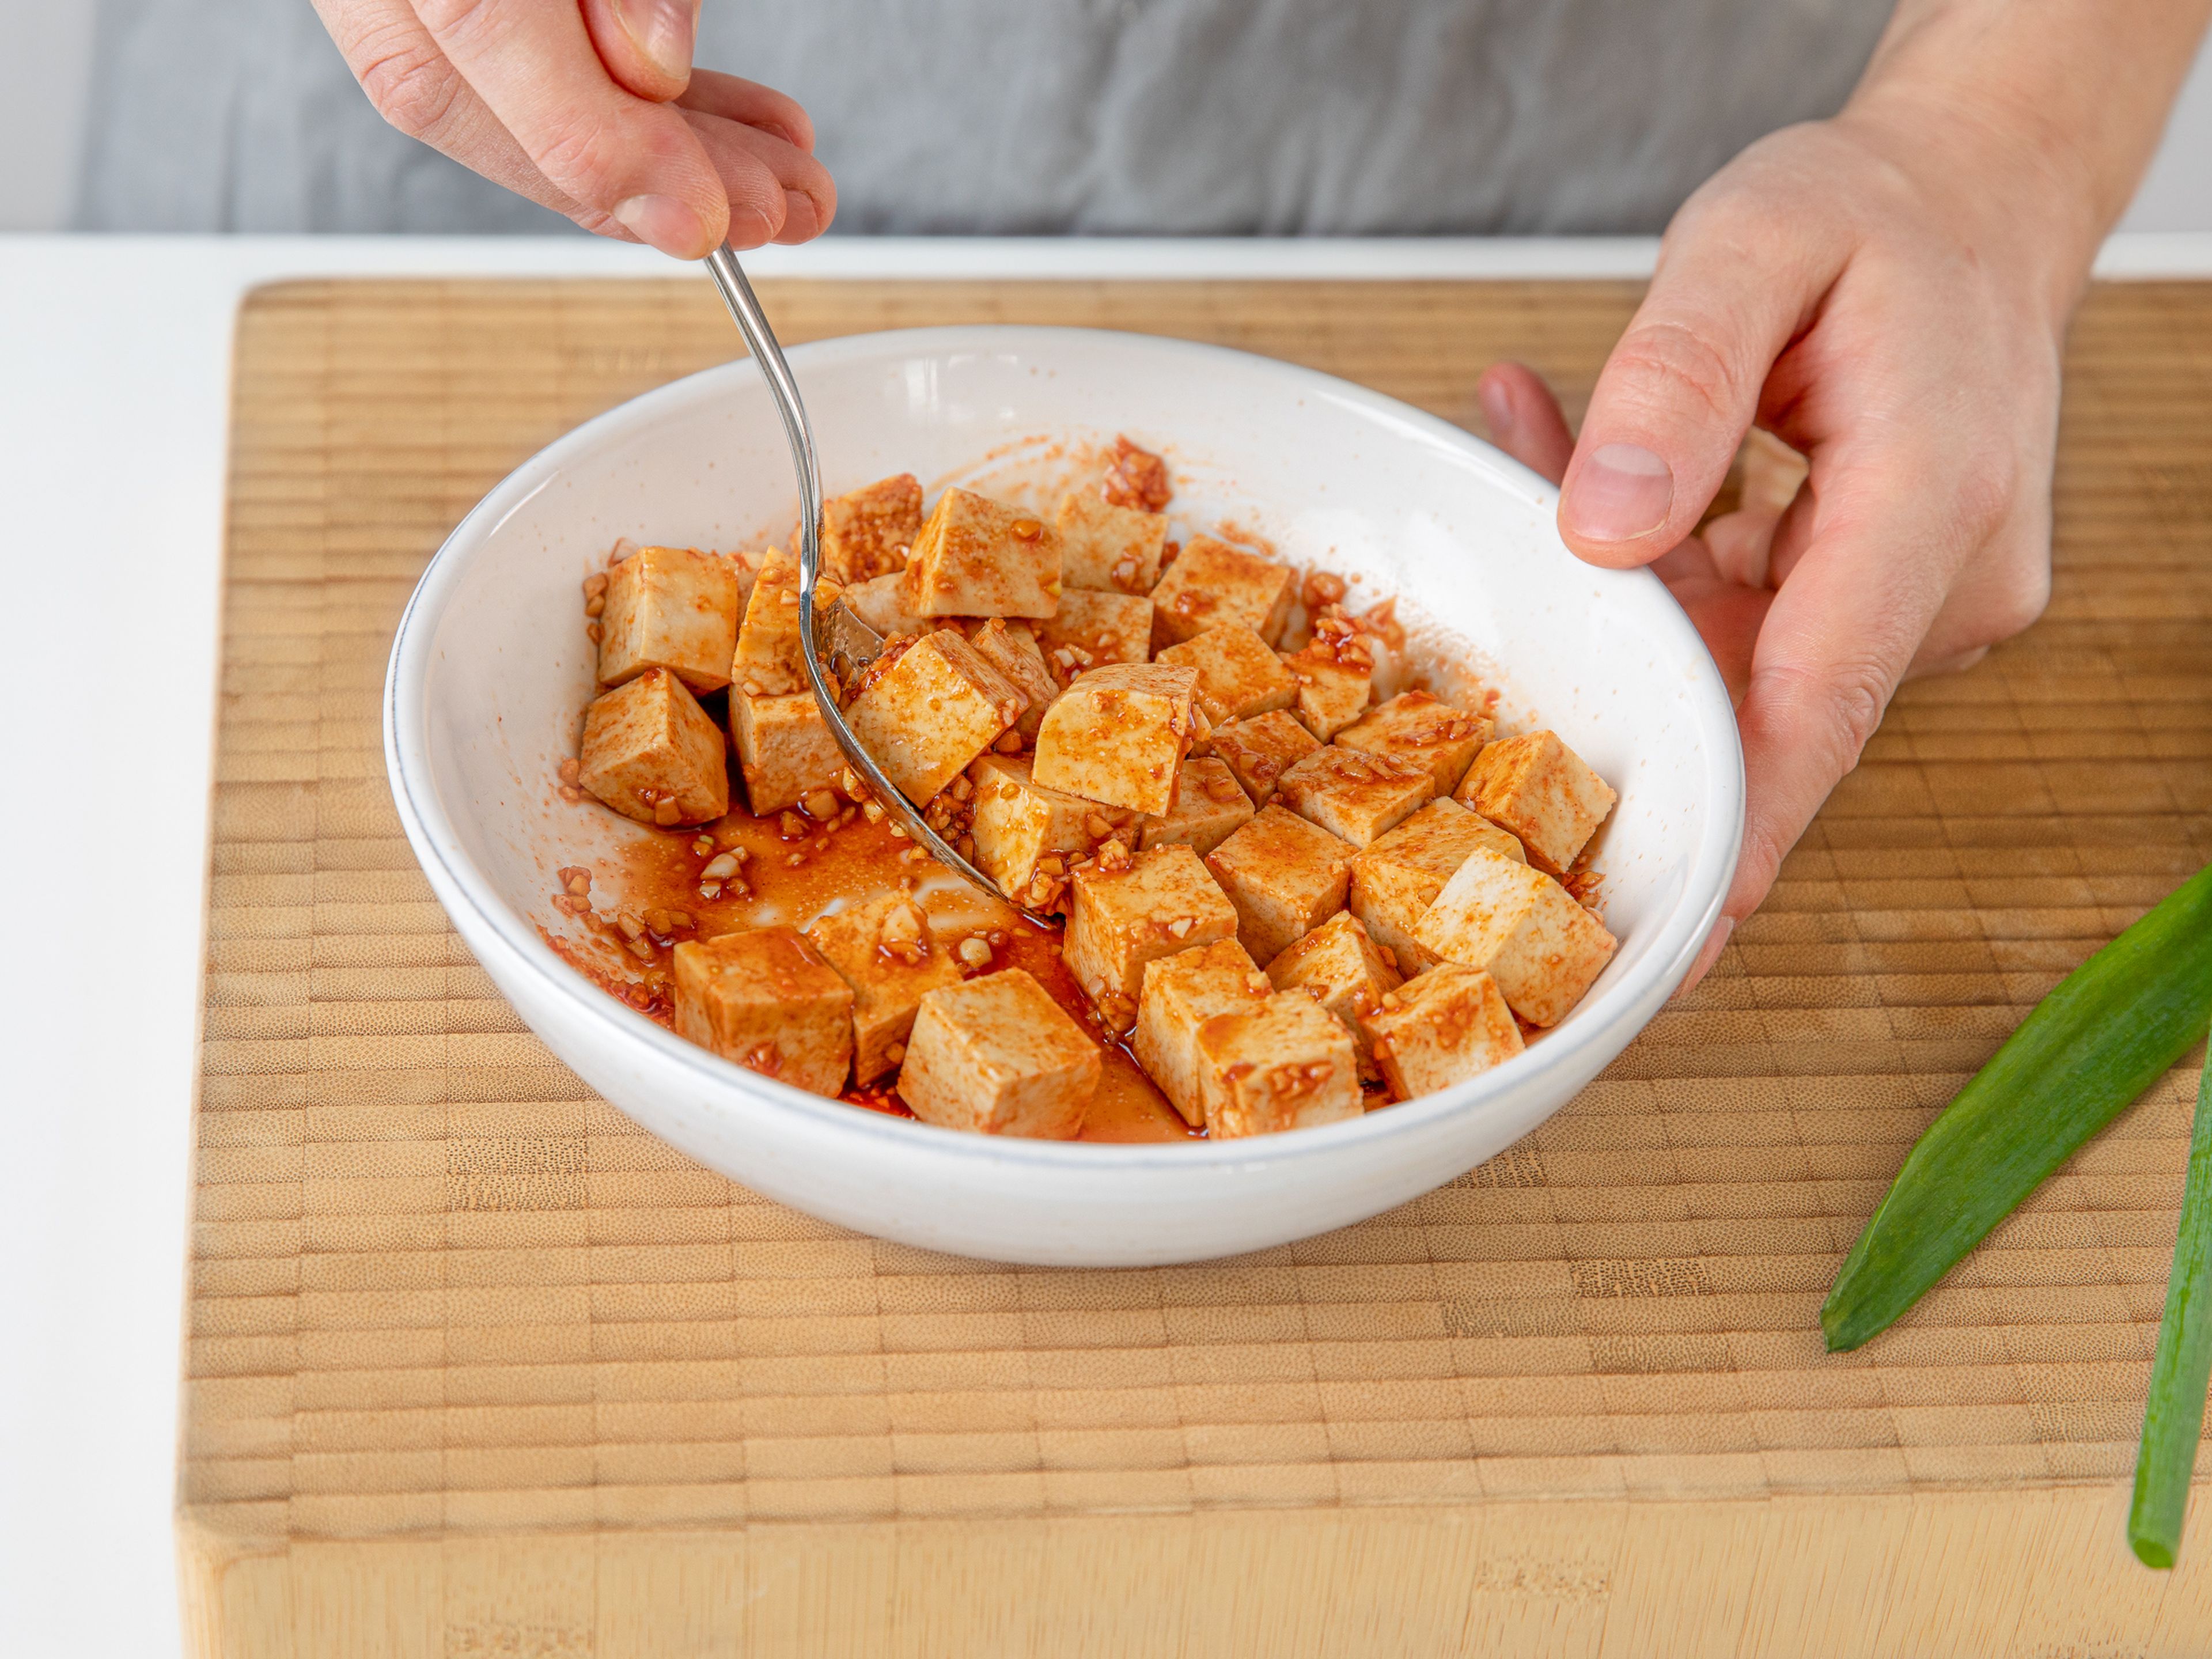 Für die Tofu-Marinade, Knoblauch und Ingwer schälen und beides fein hacken. Sojasauce, Gochujang, Knoblauch, Ingwer und die Hälfte des Zuckers in einer Schüssel verrühren. Tofu in mundgerechte Würfel schneiden, in die Marinade geben und gut vermischen. Für ca. 10 Min. marinieren lassen.